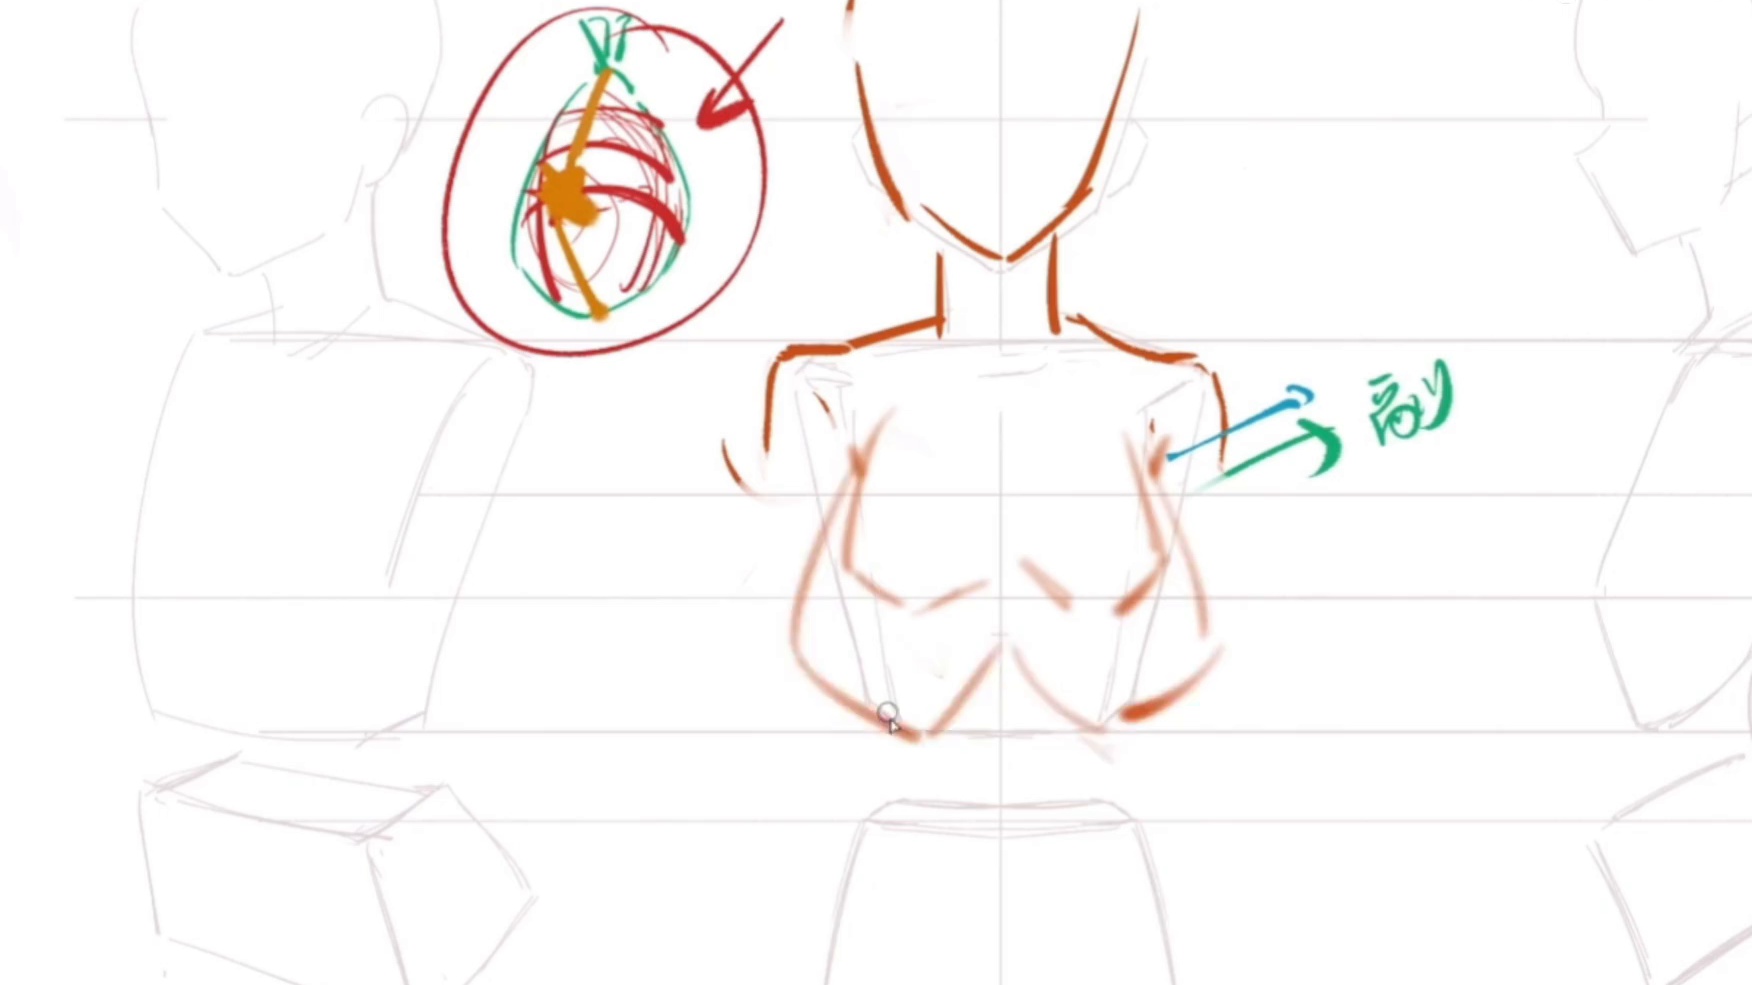 Khám phá cách vẽ ngực đầy chuyên nghiệp với các bước chỉ dẫn cụ thể và rõ ràng. Trải nghiệm được thể hiện qua hình ảnh chân thực và chi tiết sẽ giúp bạn tiếp cận với một kỹ thuật mới lạ trong nghệ thuật vẽ!